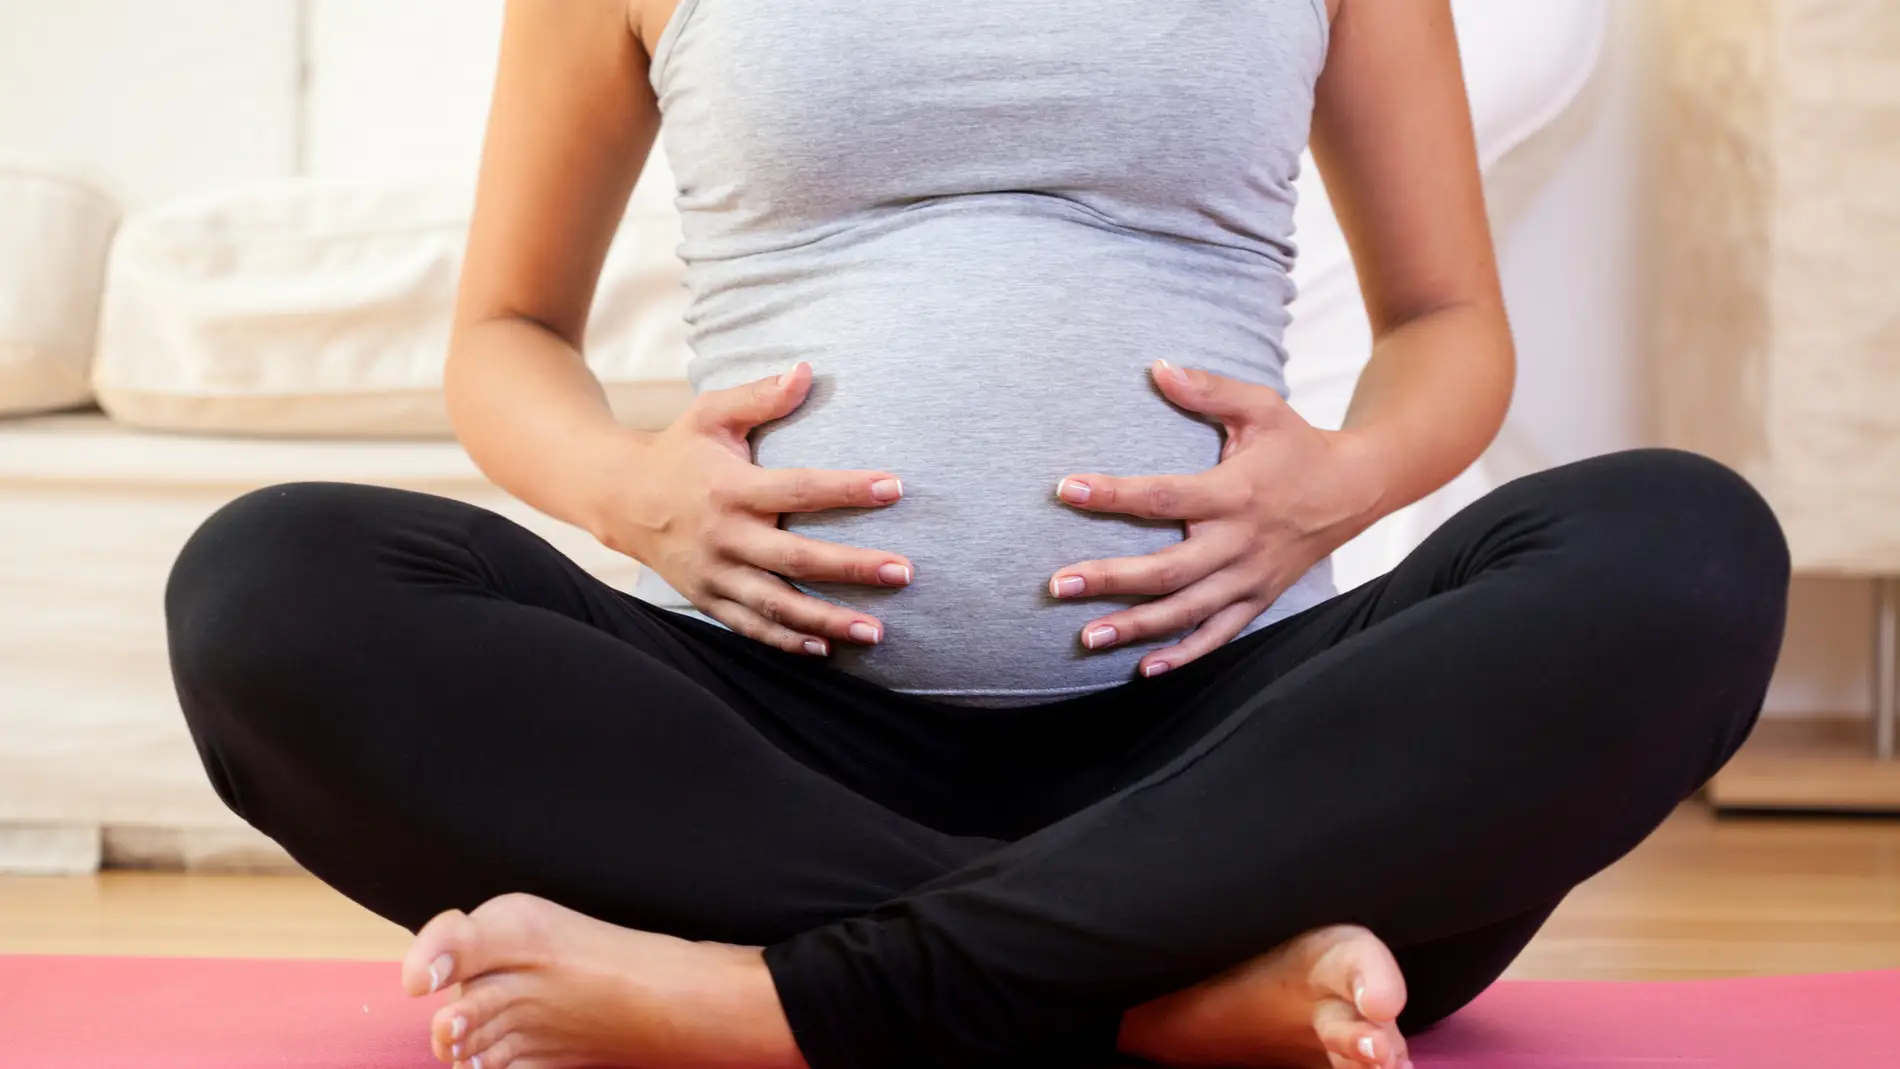 Ejercicios que es mejor evitar en el embarazo